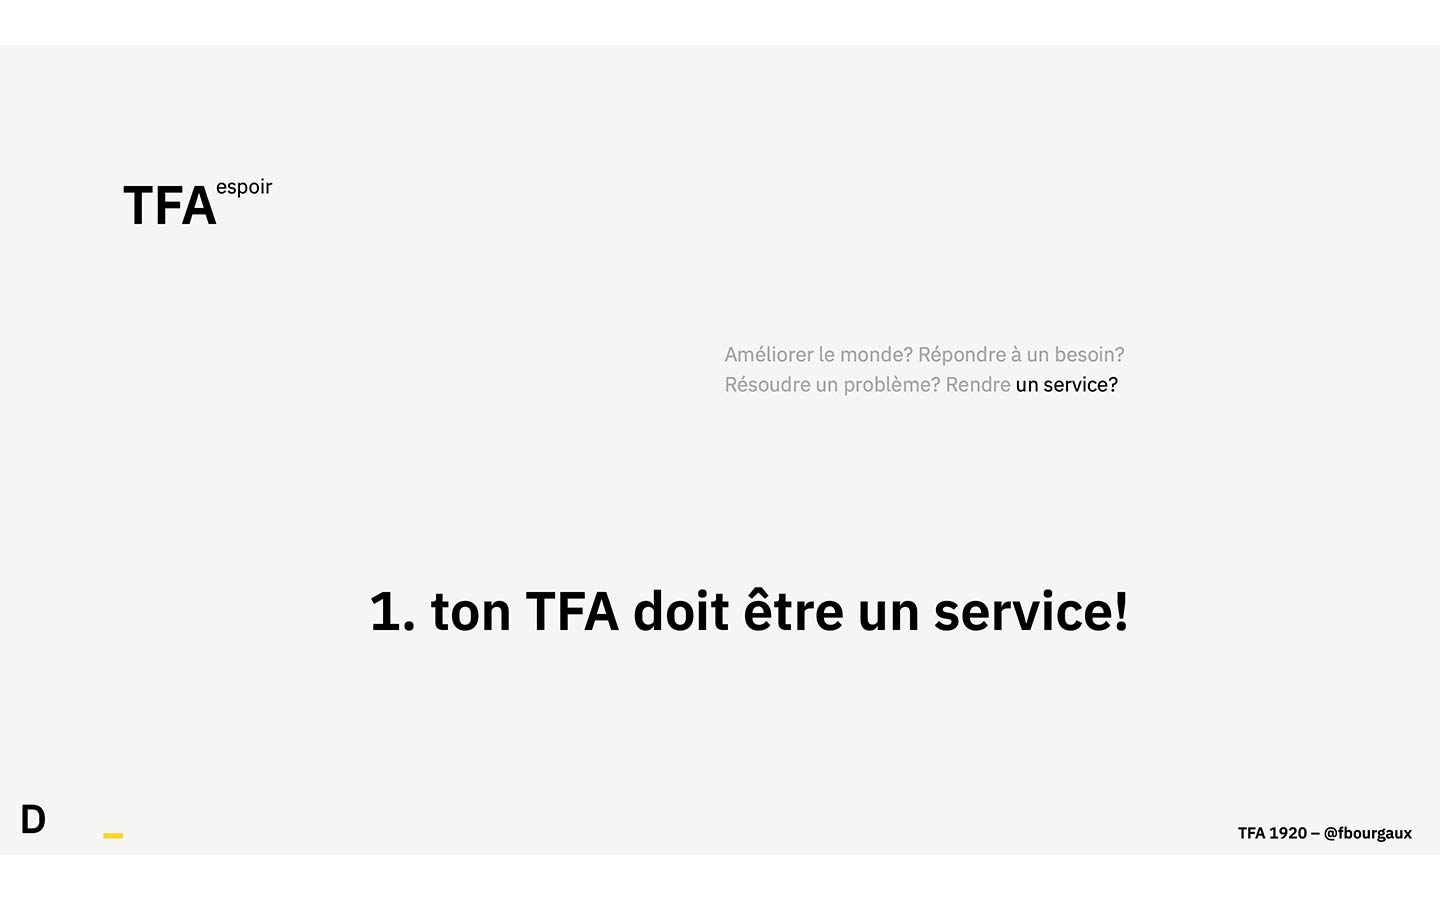 Une des slides de présentation du TFA